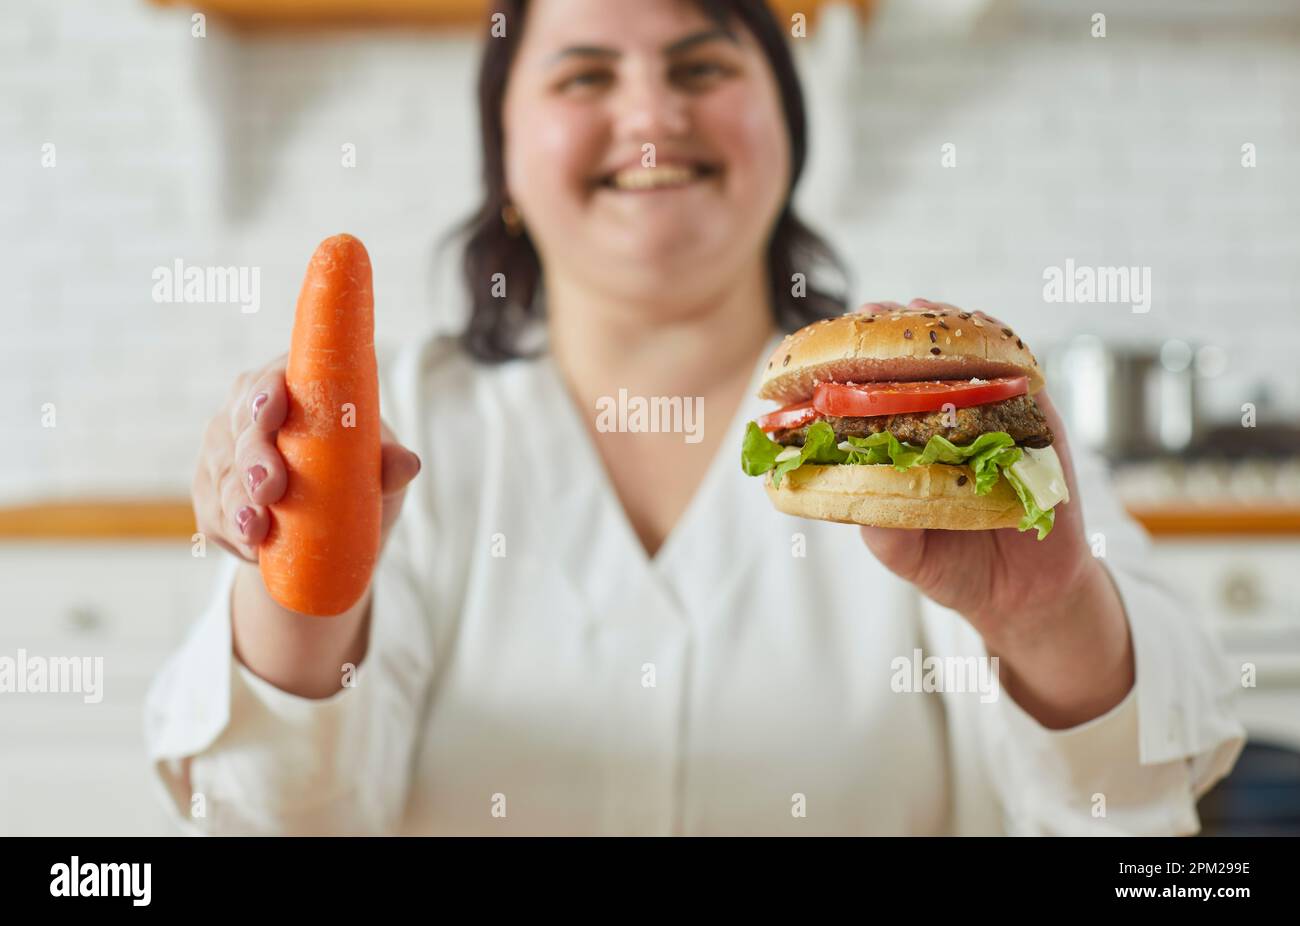 Giovane donna grassa di peso maggiorato che tiene un hamburger in una mano e una carota in un'altra. Foto Stock